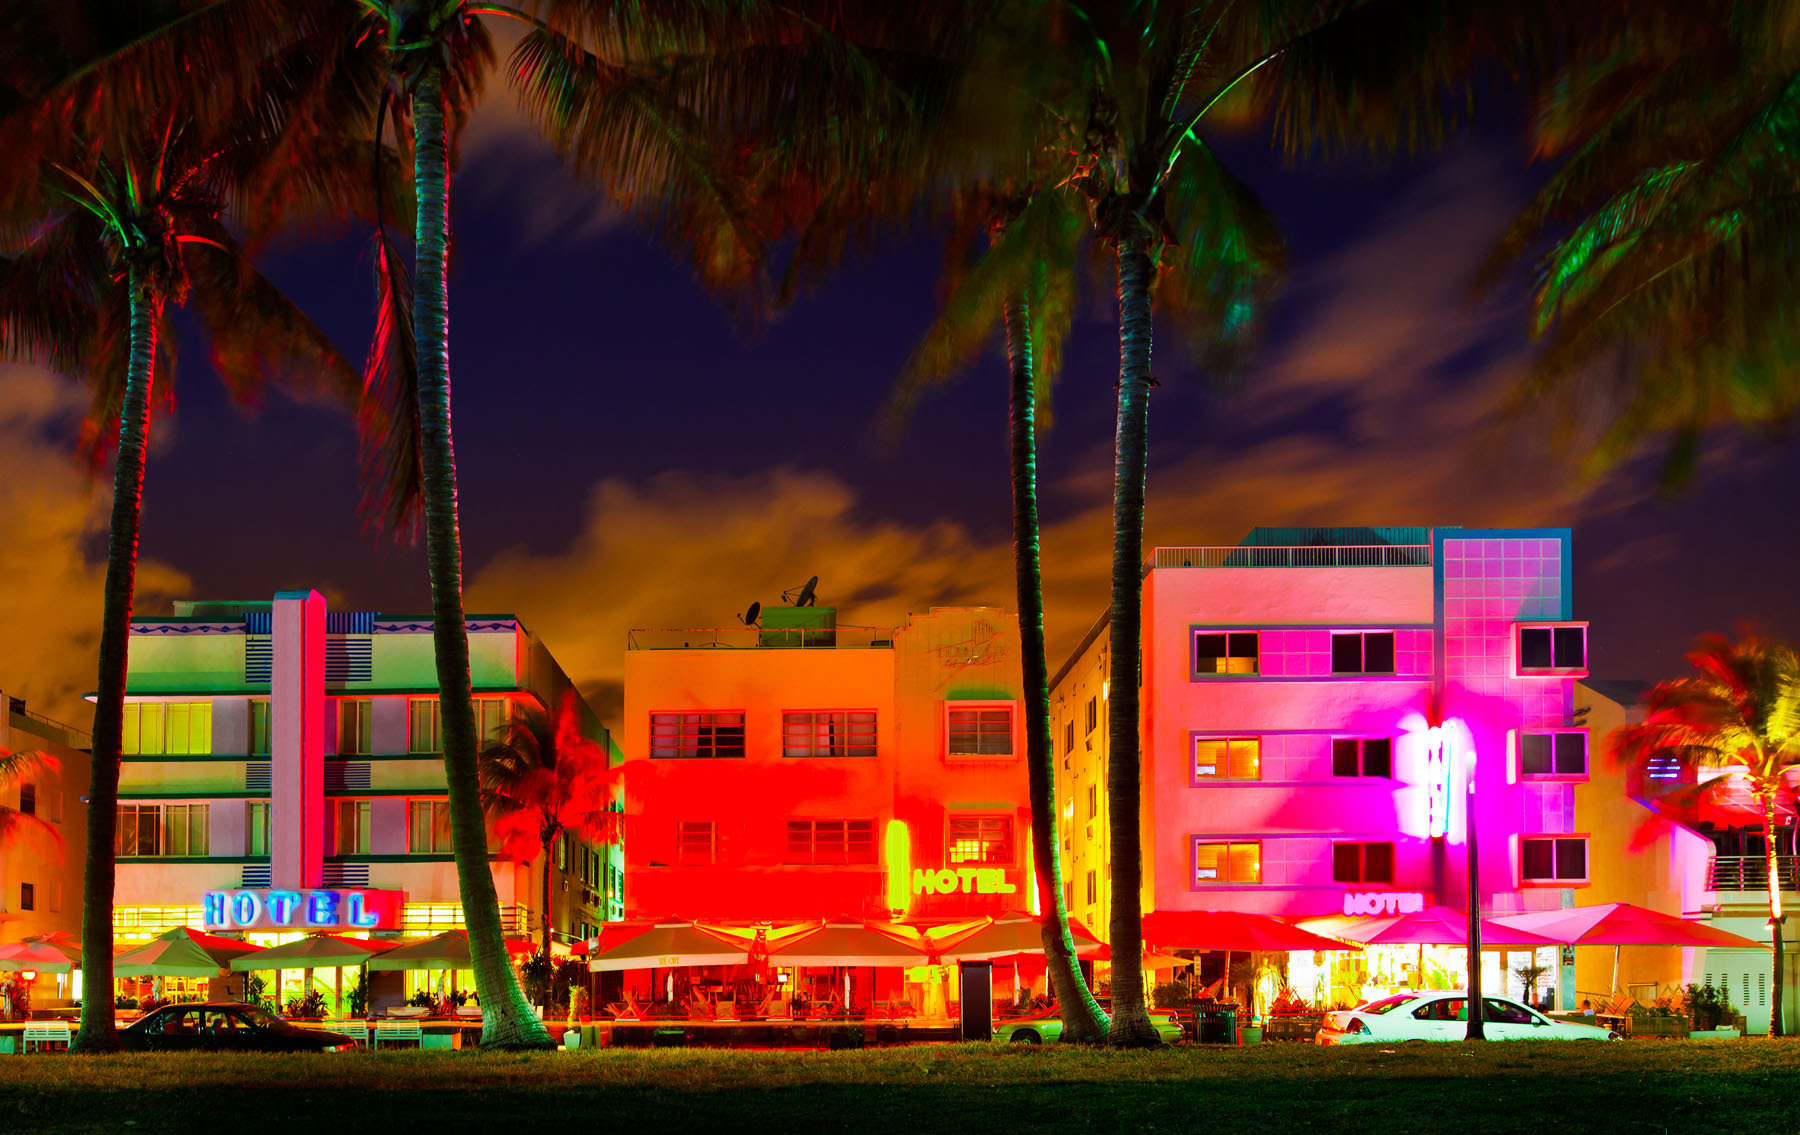 Miami Art Deco